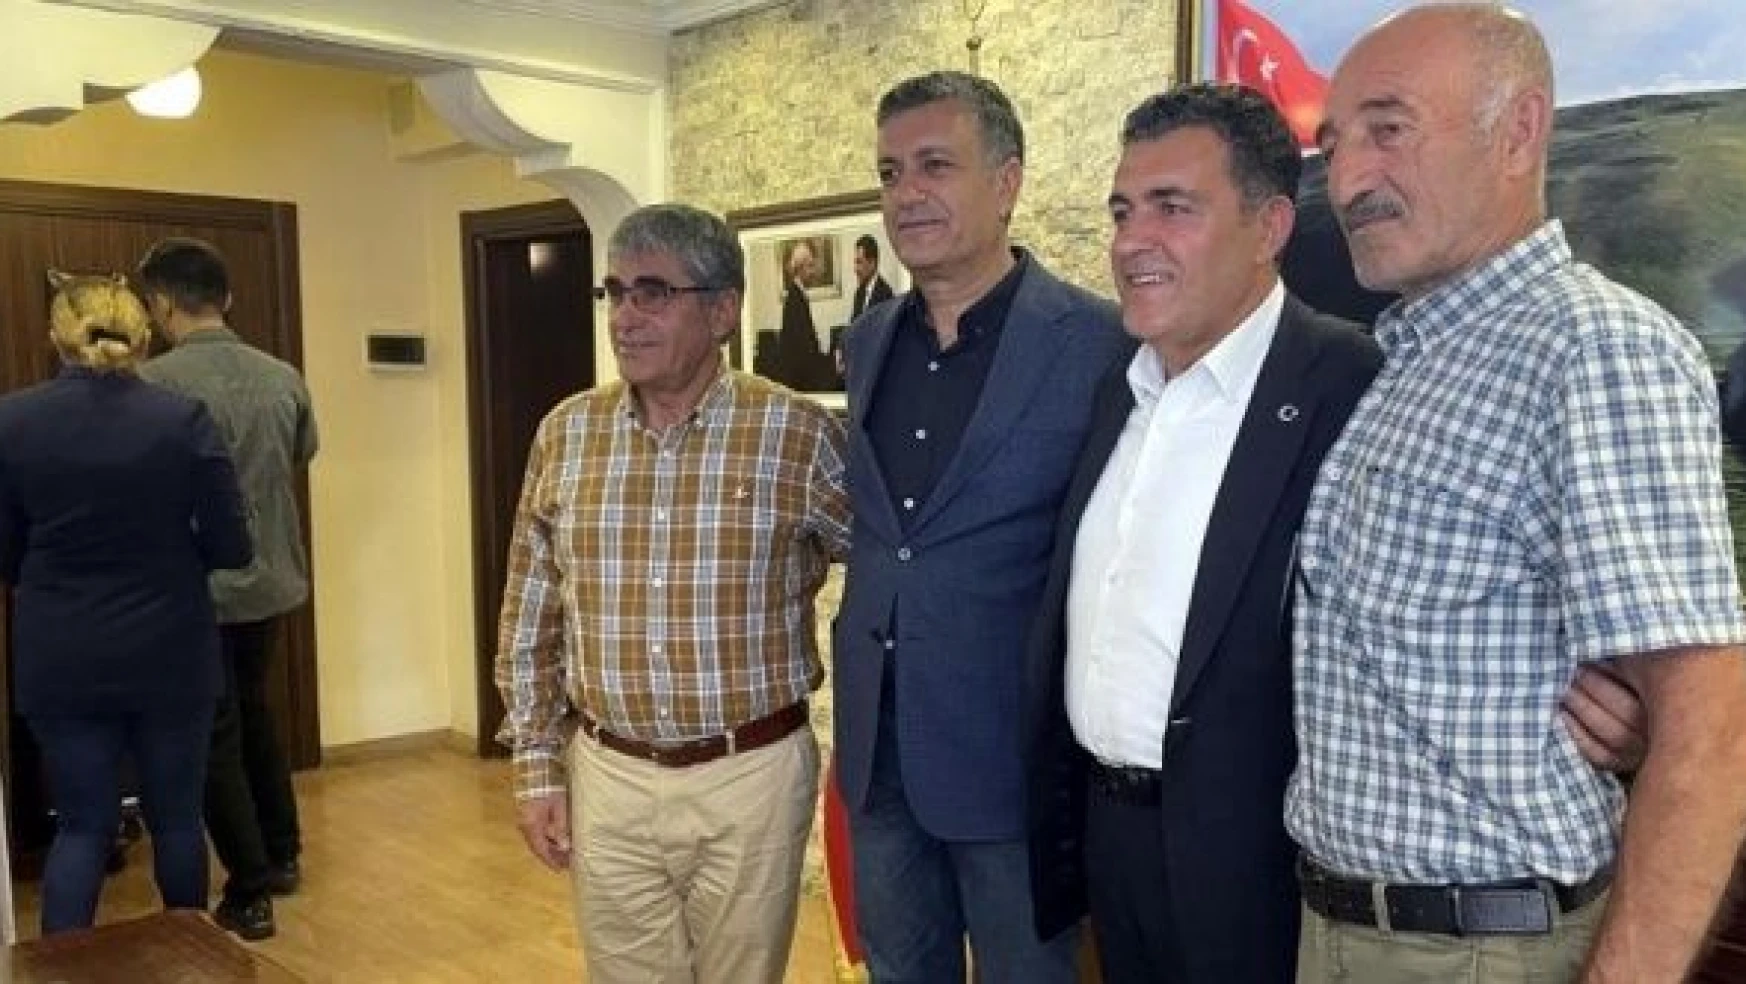 Esenyurt Belediye Başkanı Bozkurt'tan Ardahan'a ziyaret